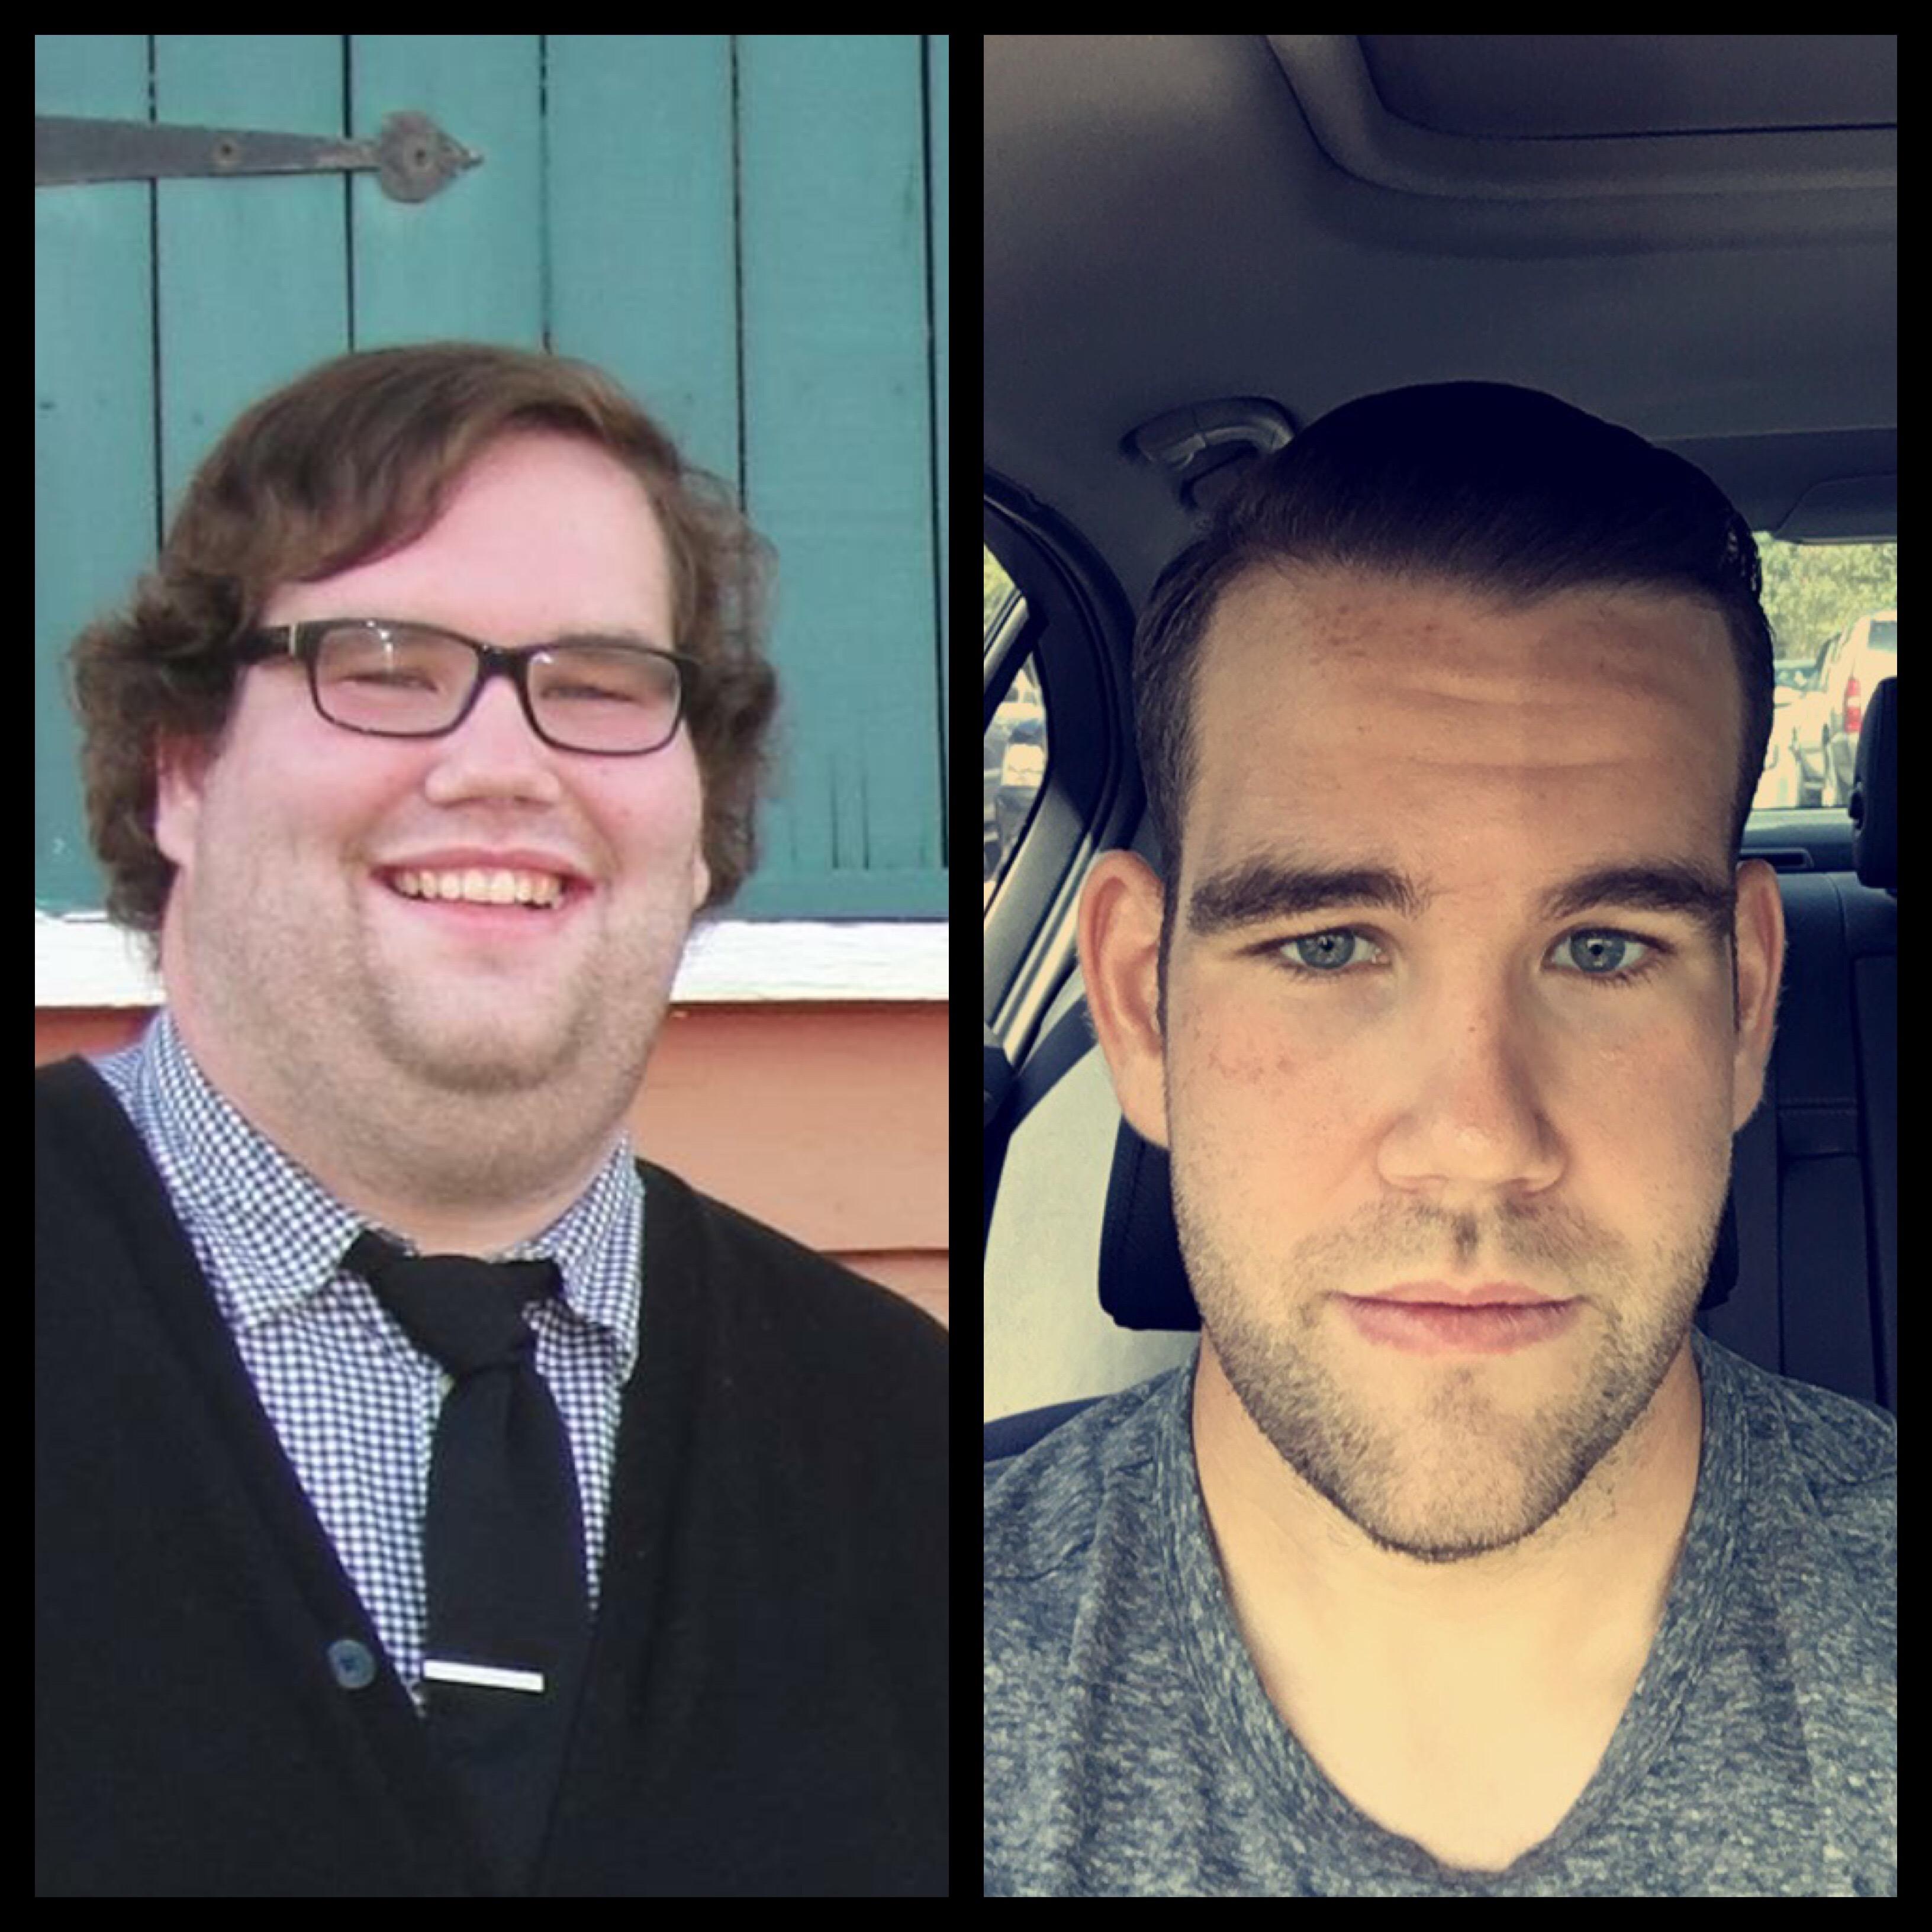 Изменился в 16 лет. Люди изменившие внешность. Люди, которые изменились внешне. Лицо до и после похудения. Изменение внешности с возрастом.